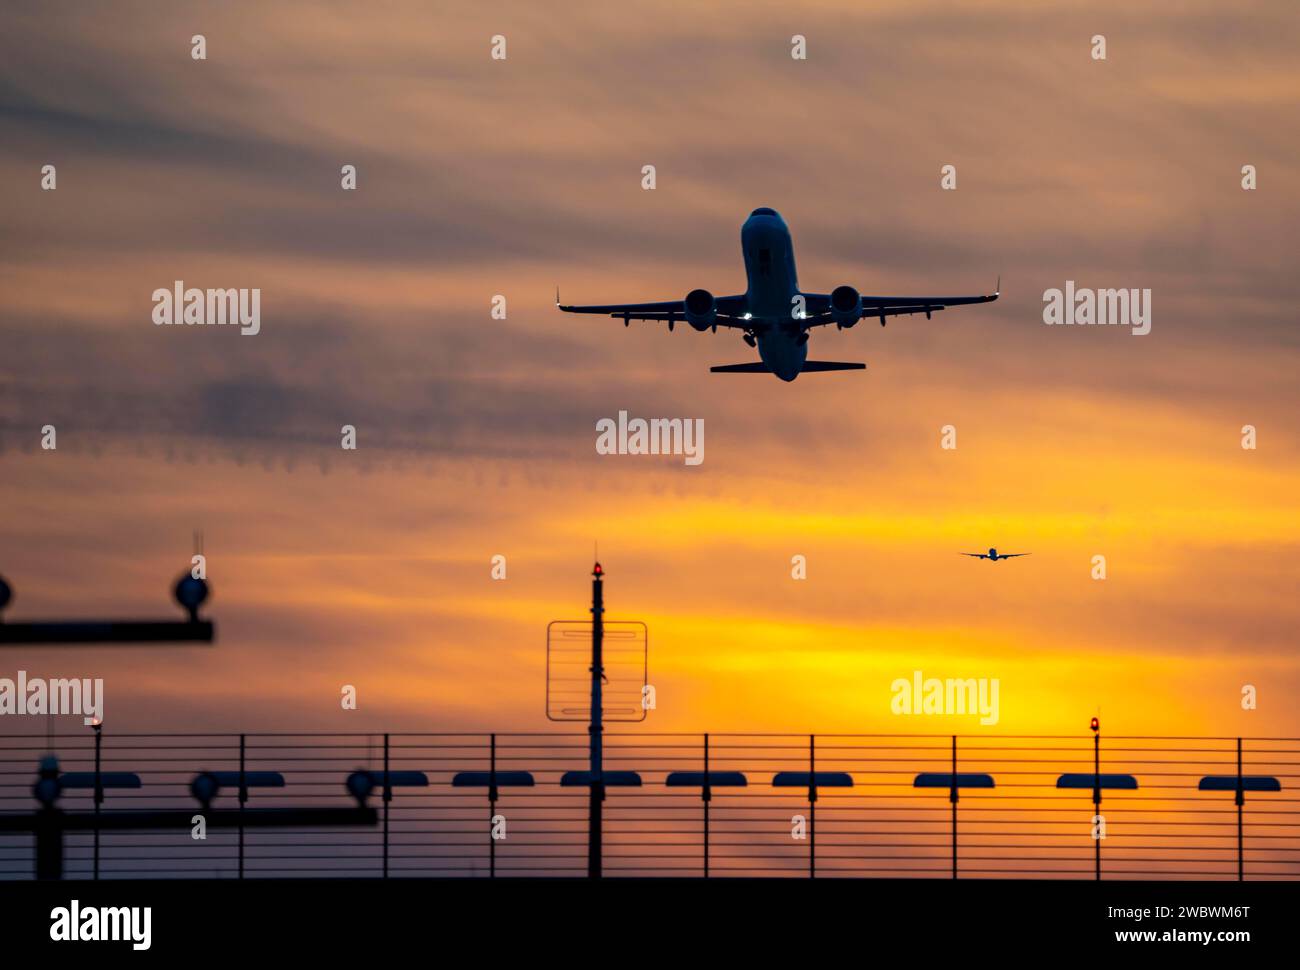 Illuminazione delle piste, ausili di avvicinamento, all'aeroporto internazionale di Düsseldorf, tramonto, decollo degli aerei e avvicinamento alla pista principale sud, 05R/23L, NR Foto Stock